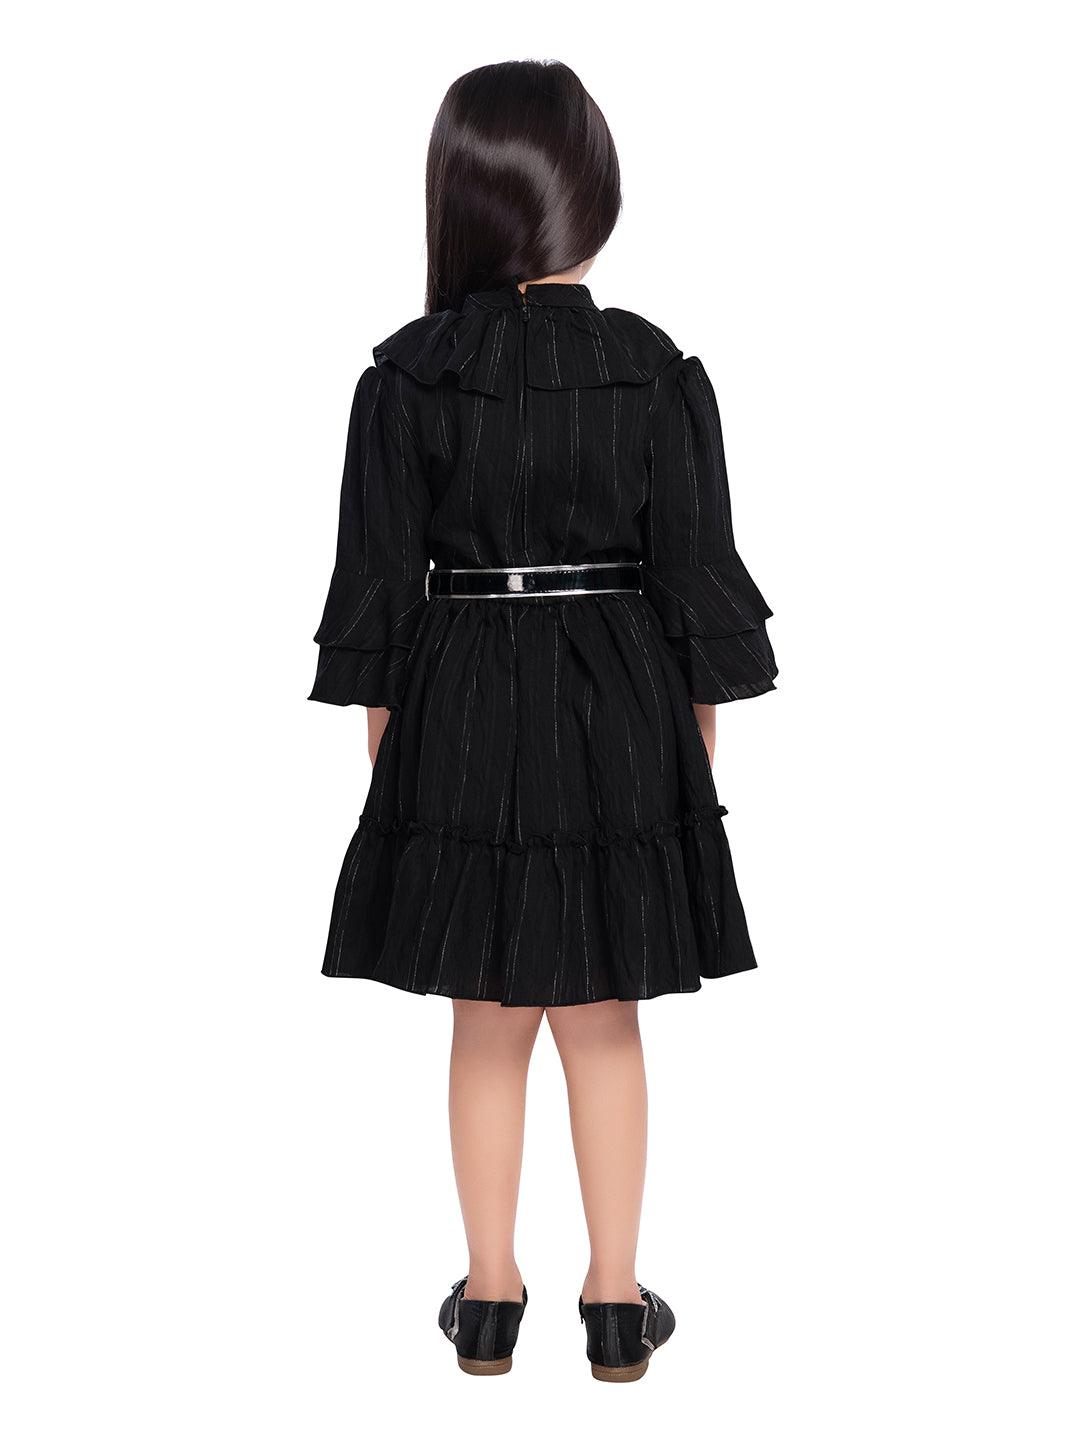 Tiny Baby Black Colored Dress - 2060 Black – TINY BABY INDIA